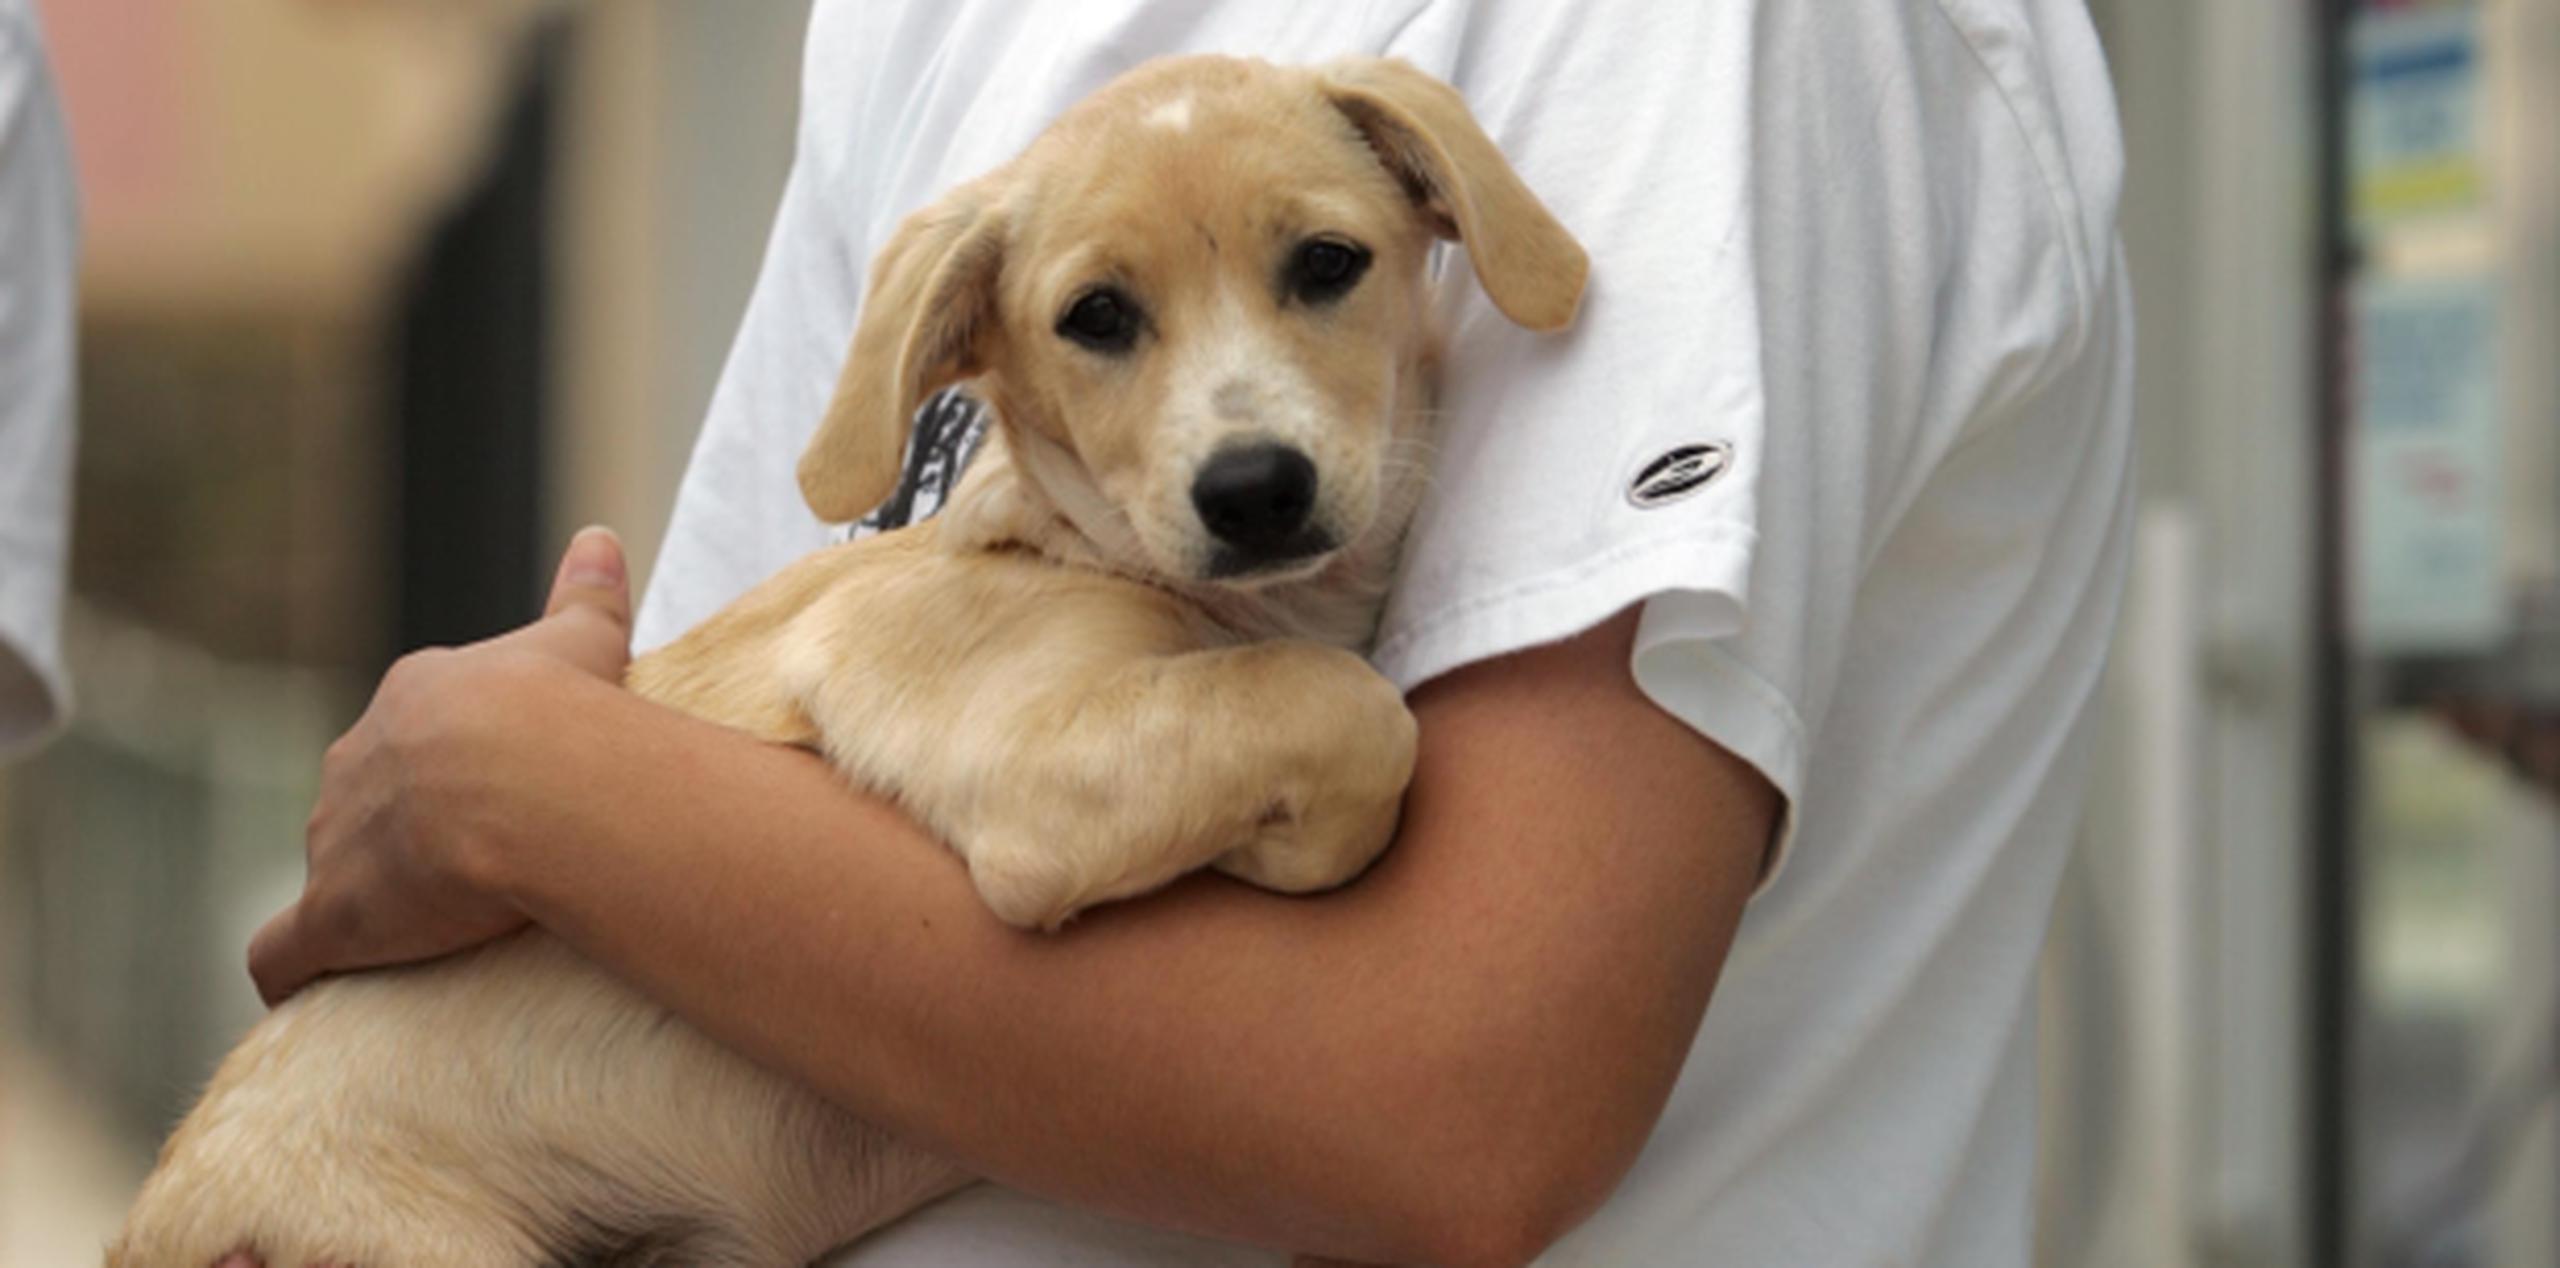 La vacunación permite que tu mascota esté a salvo de enfermedades perniciosas como rabia, distemper y leptospirosis. (Archivo)